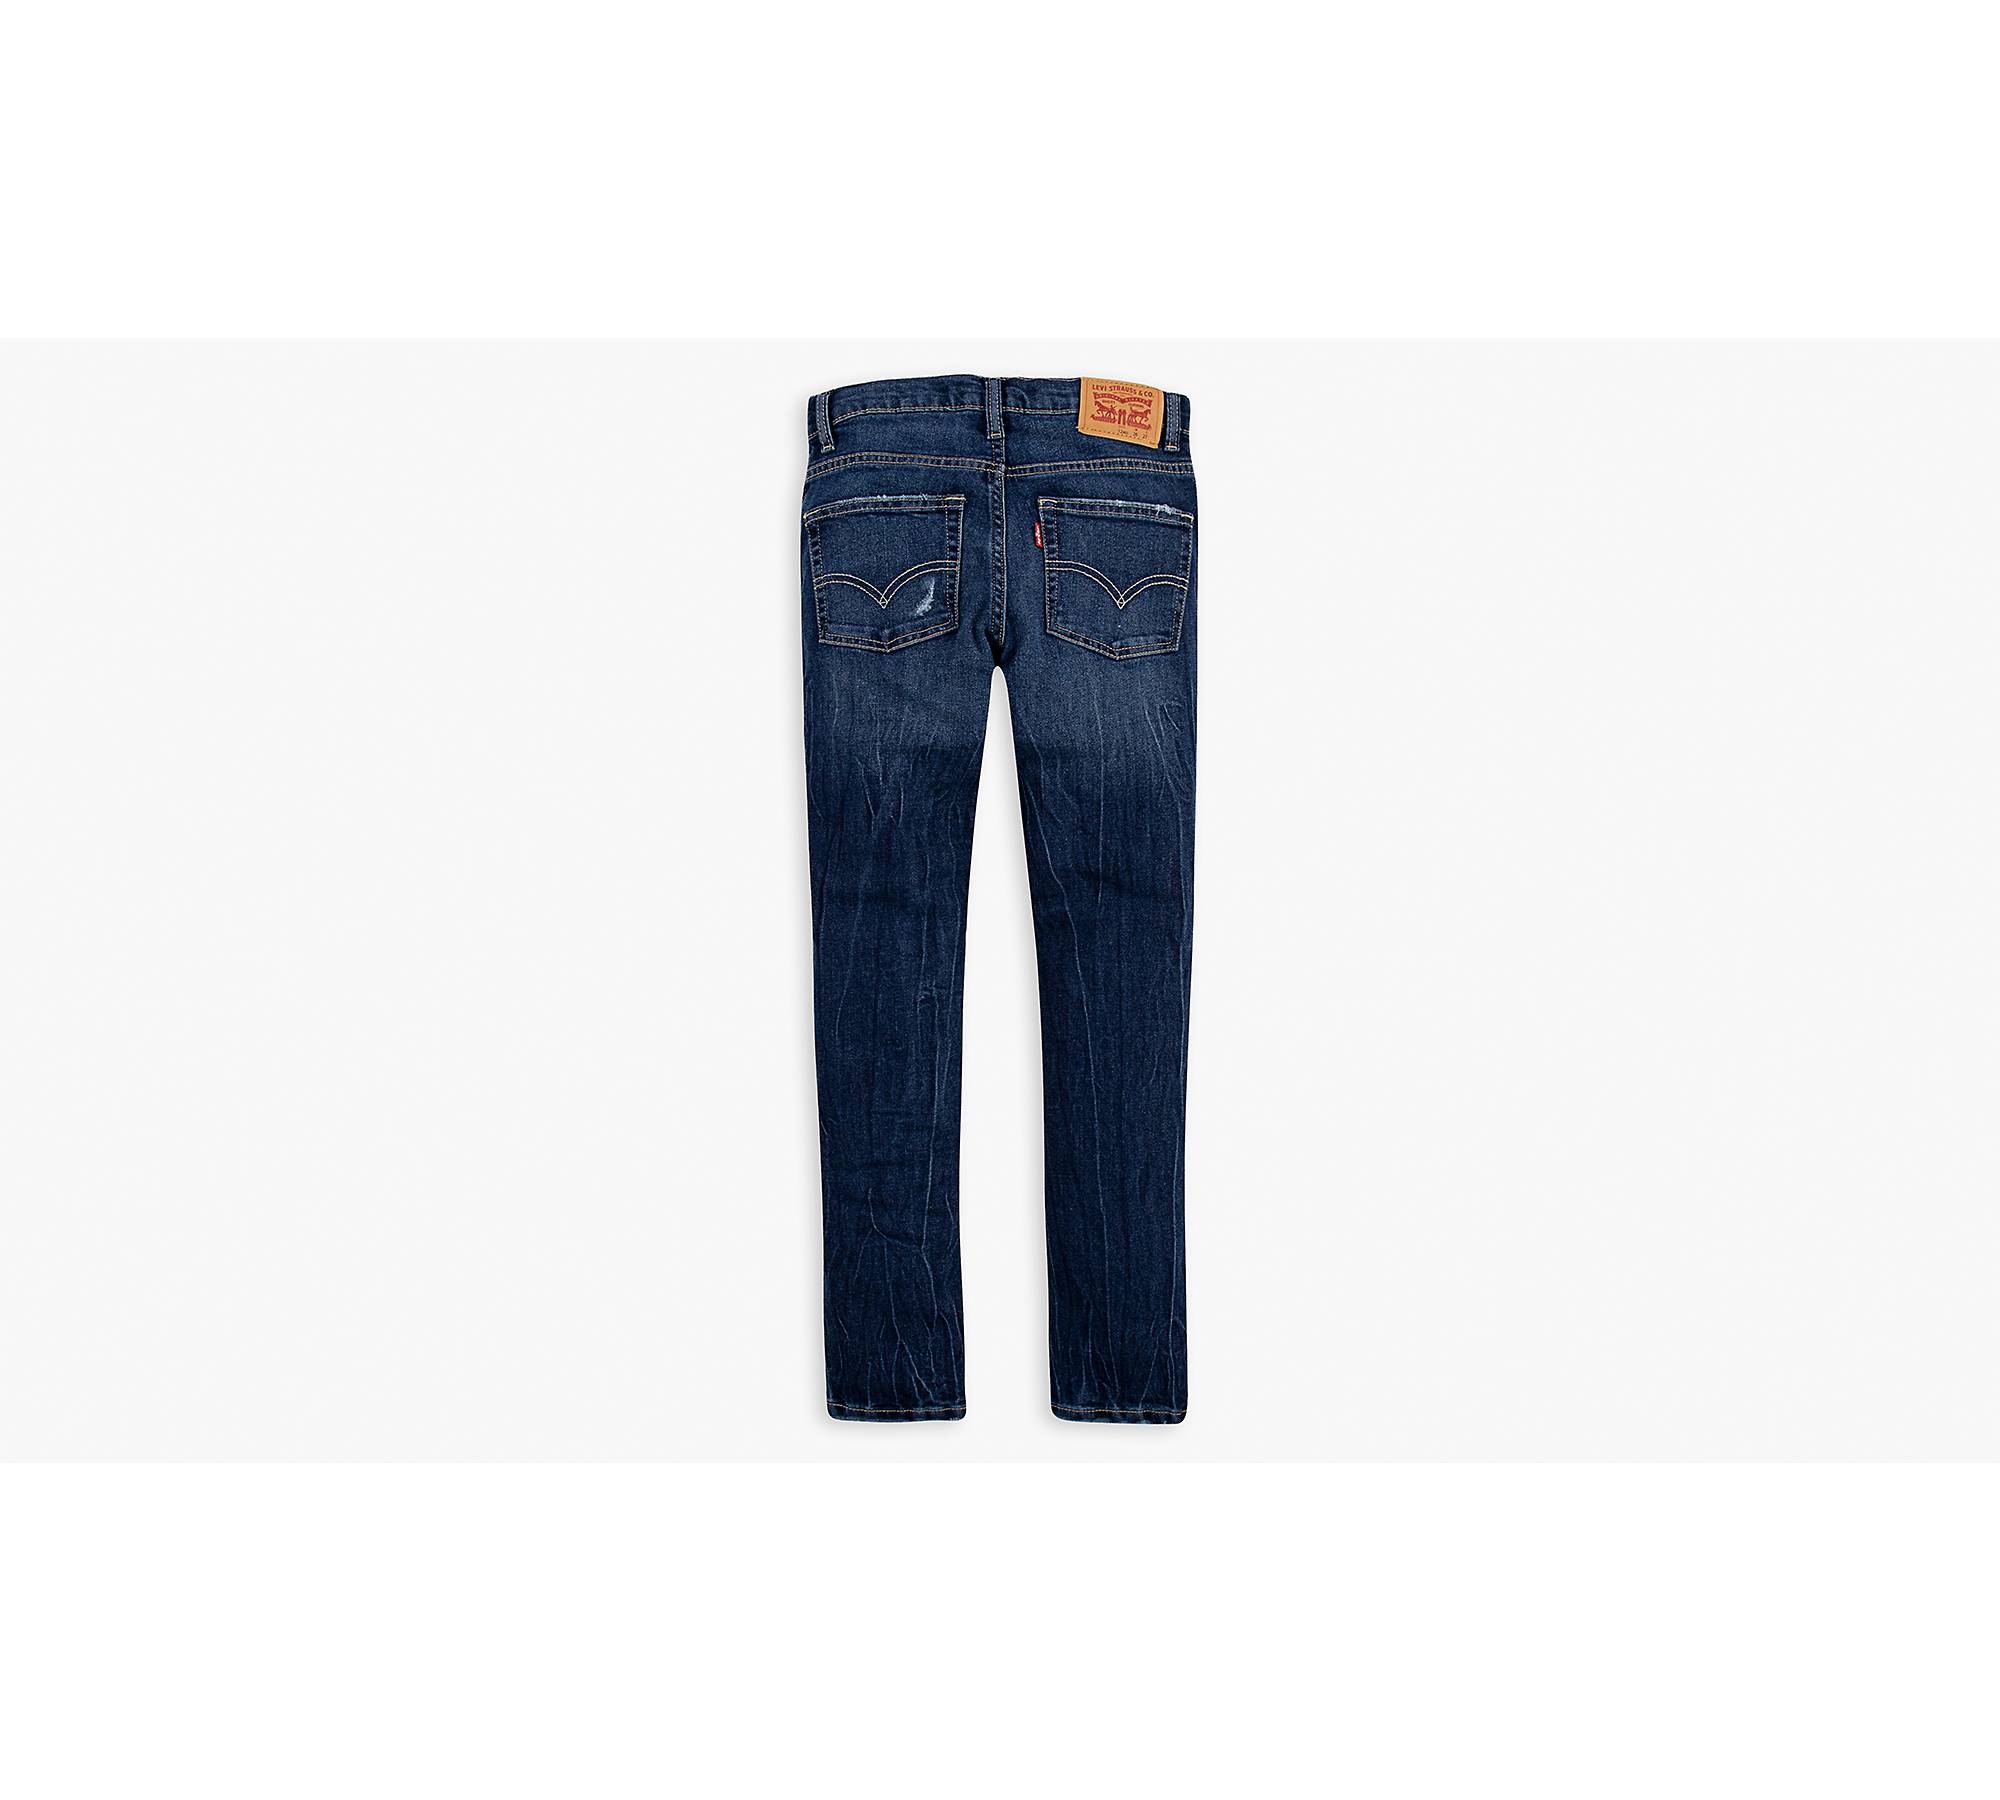 Skinny Taper Fit Big Boys Jeans (8-20) - Medium Wash | Levi's® US